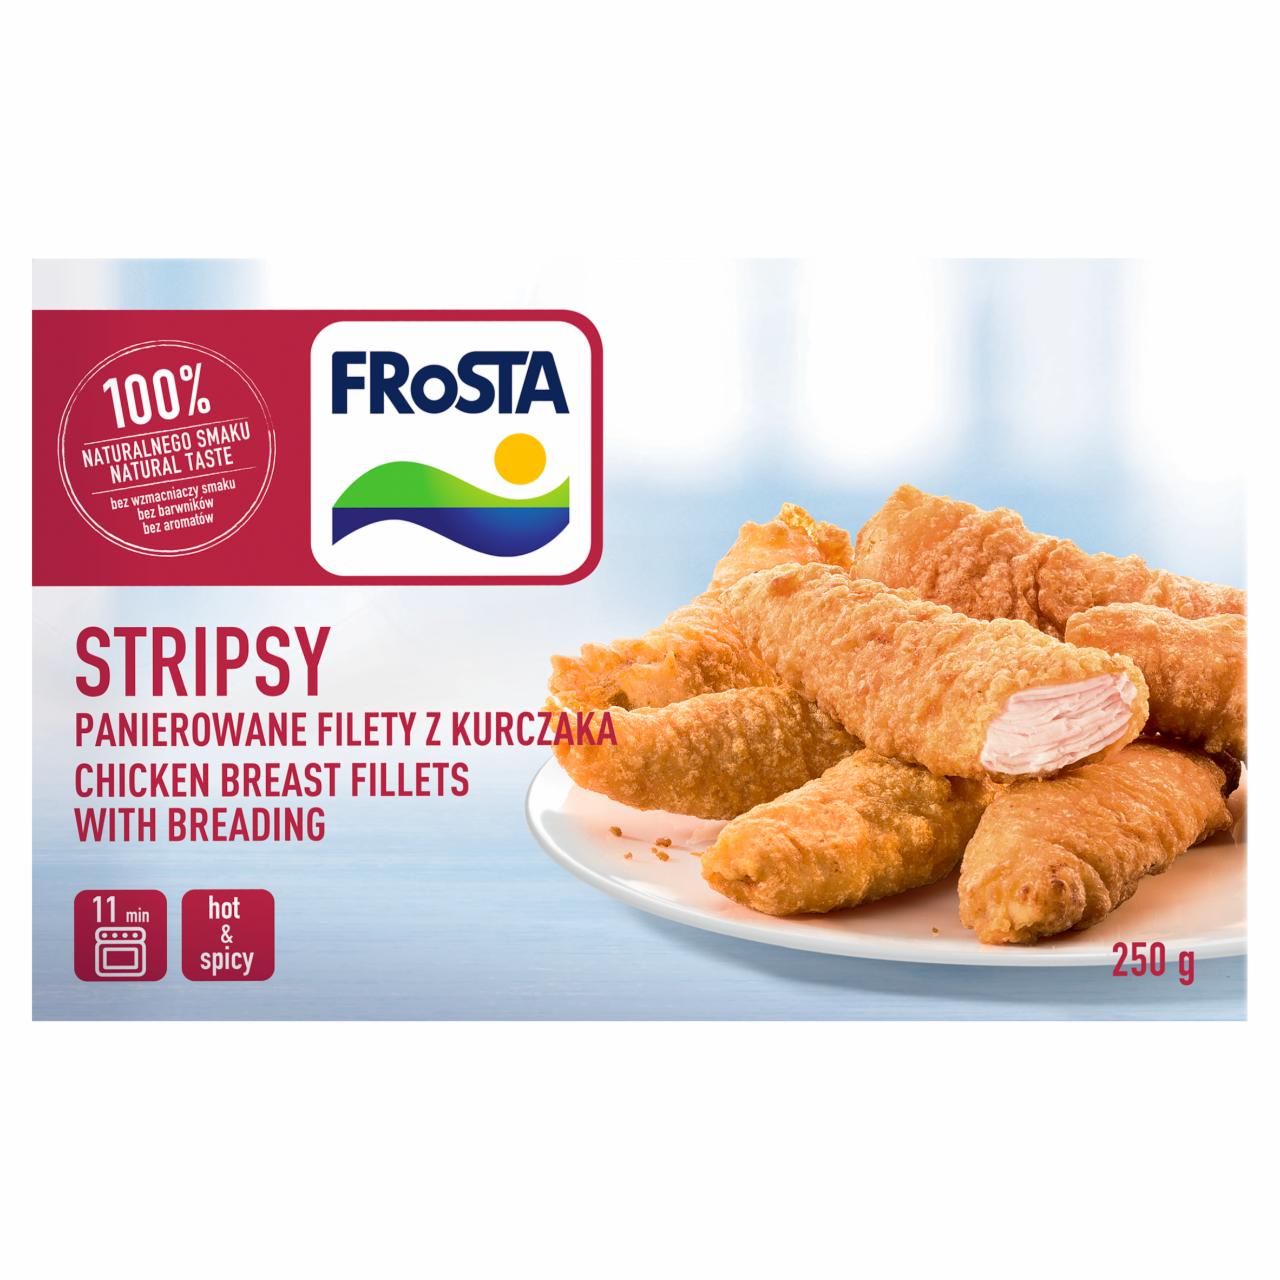 Zdjęcia - Stripsy Panierowane filety z kurczaka FRoSTA